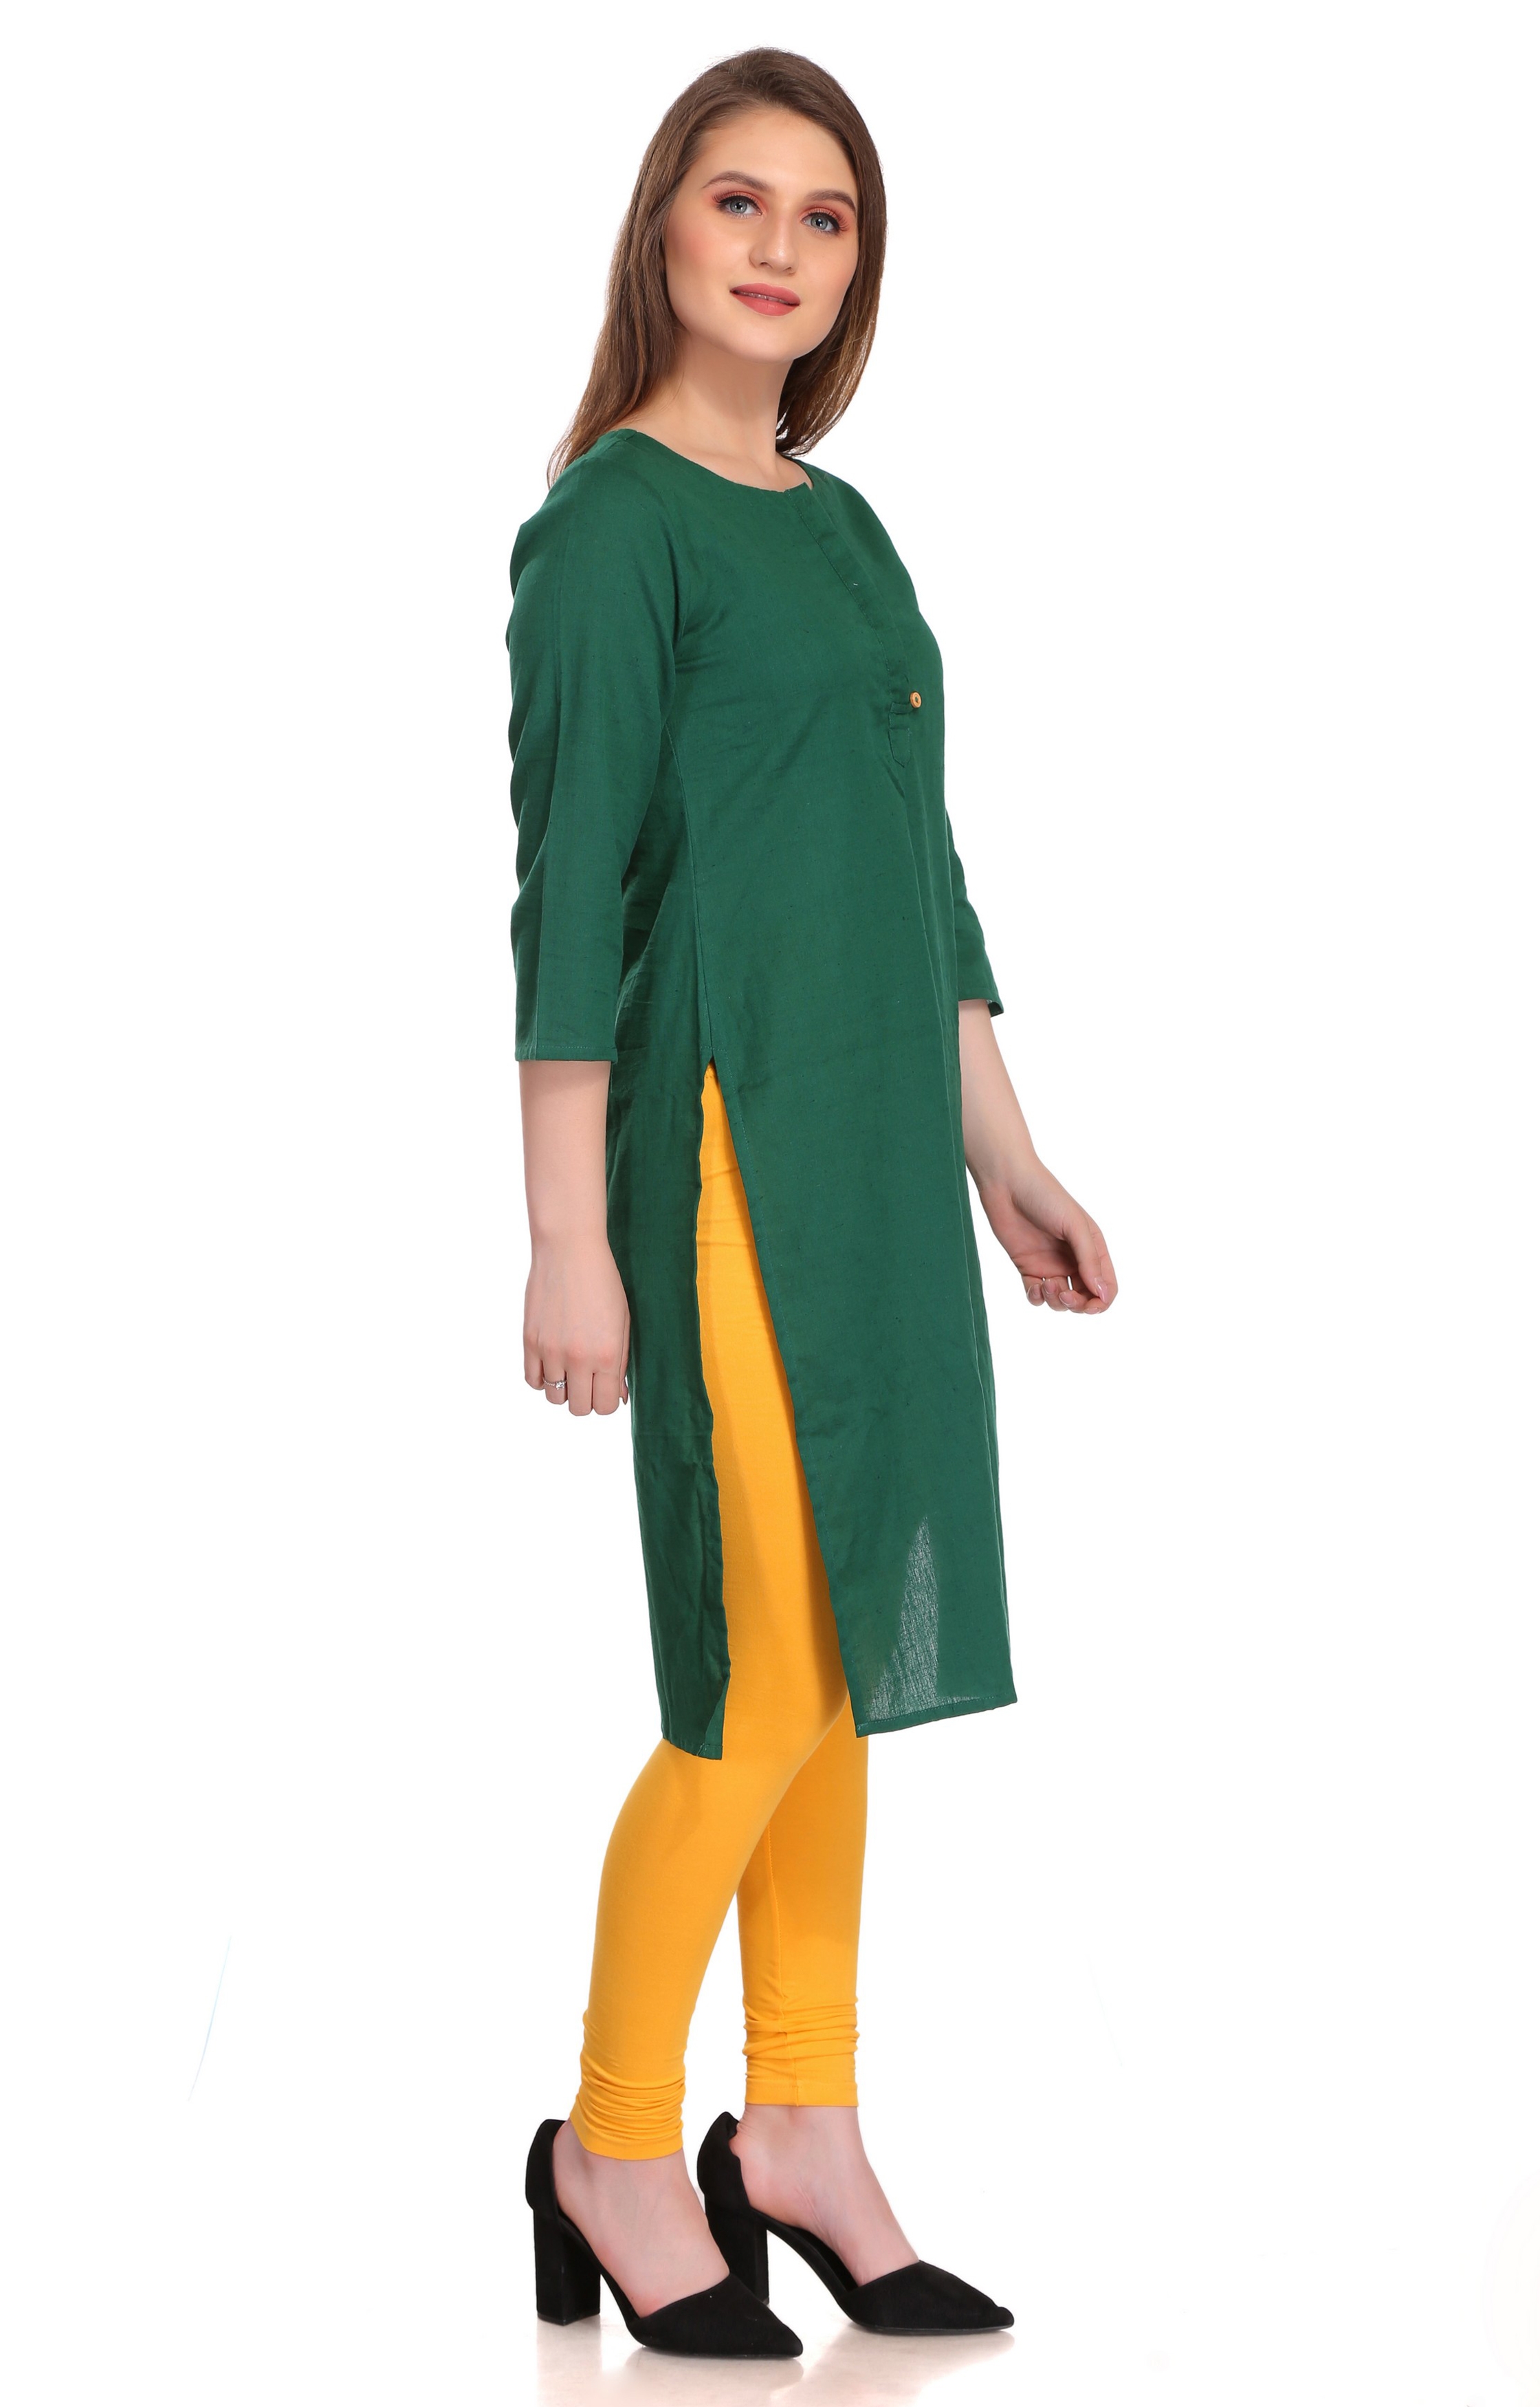 Colorfit | Colorfit Cotton Lycra Churidar Length Leggings for Women 2